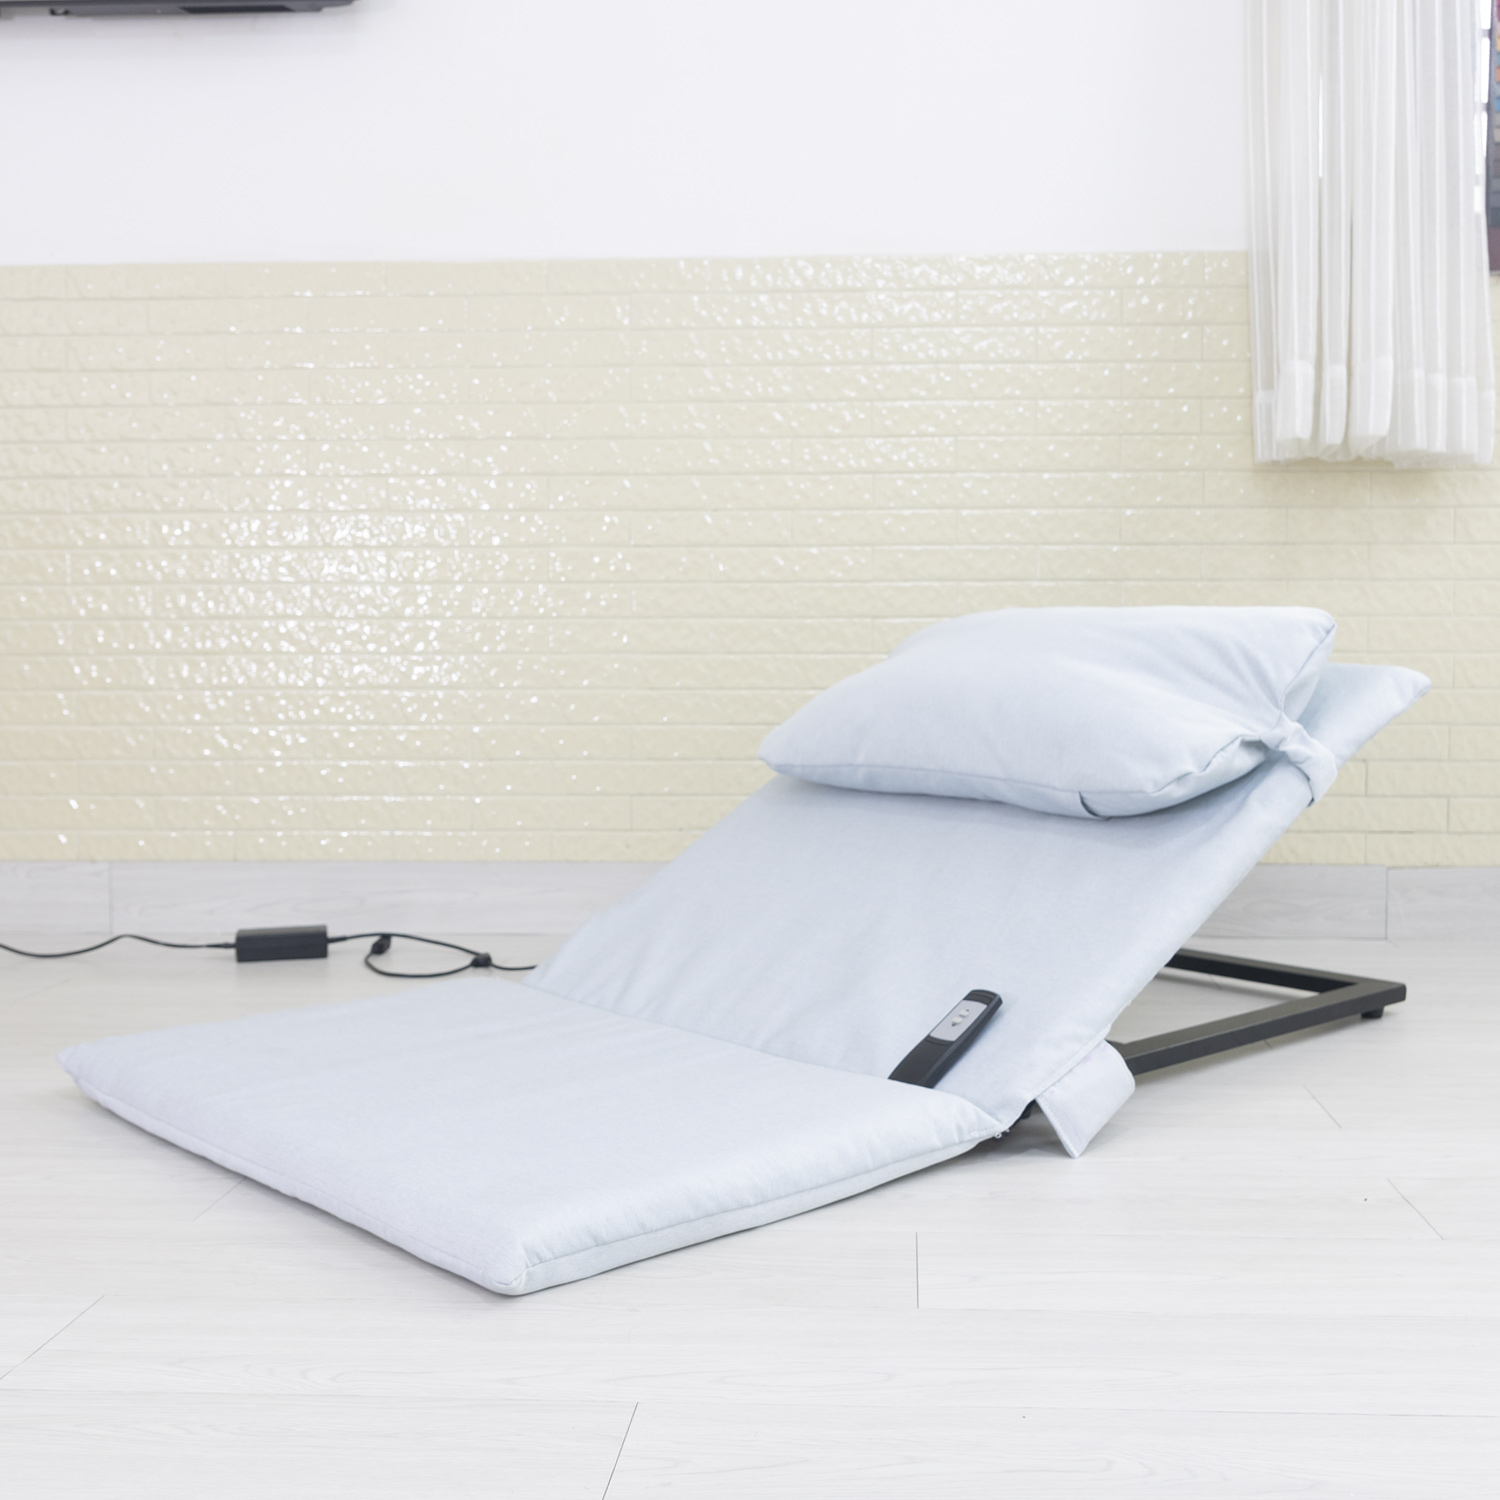 Ghế y tế điện F360 - ghế chăm sóc bệnh nhân , ghế giường nâng hạ tự động  cho người bệnh đau lưng, người bị liệt